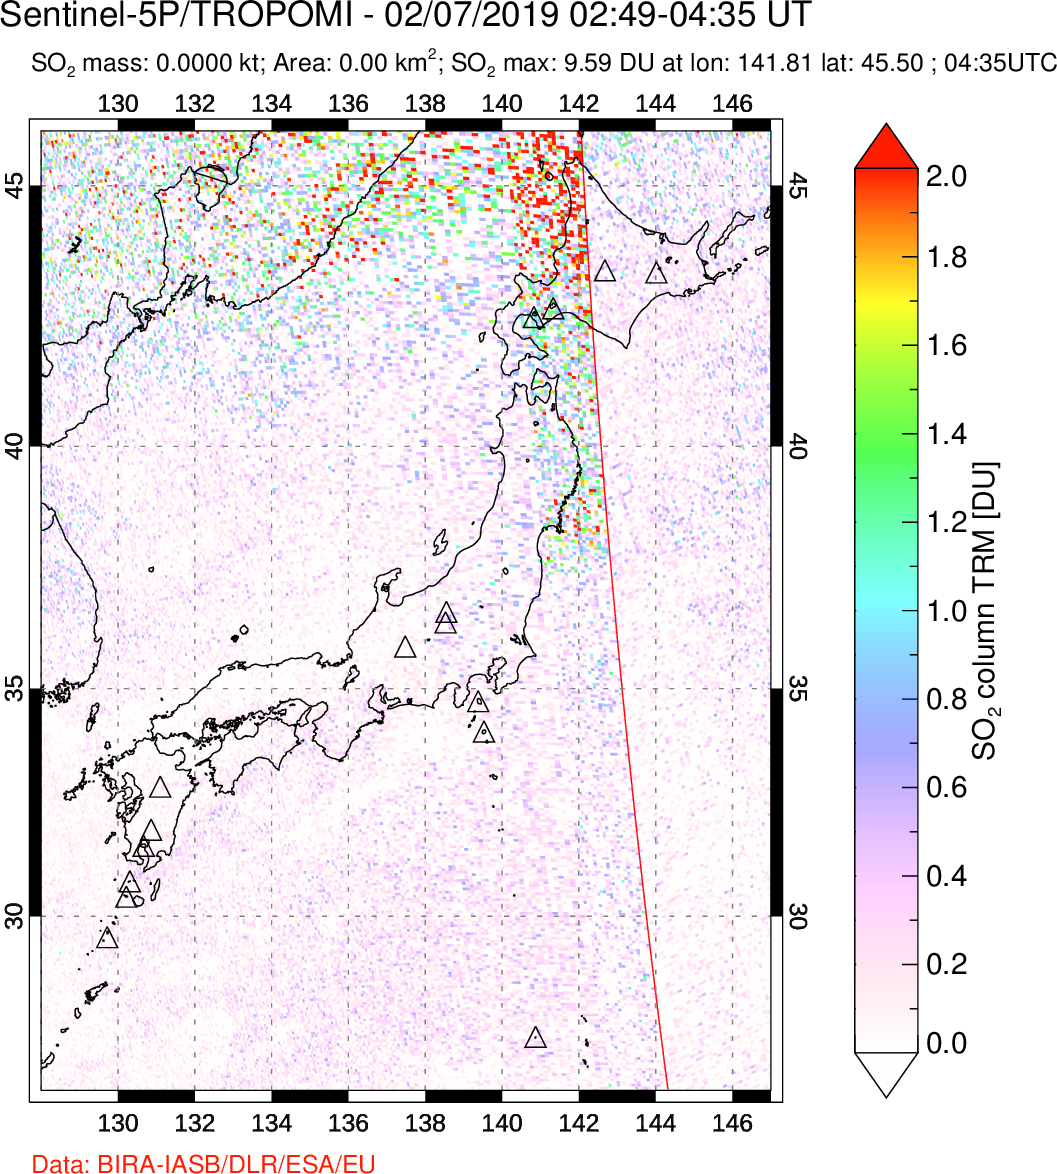 A sulfur dioxide image over Japan on Feb 07, 2019.